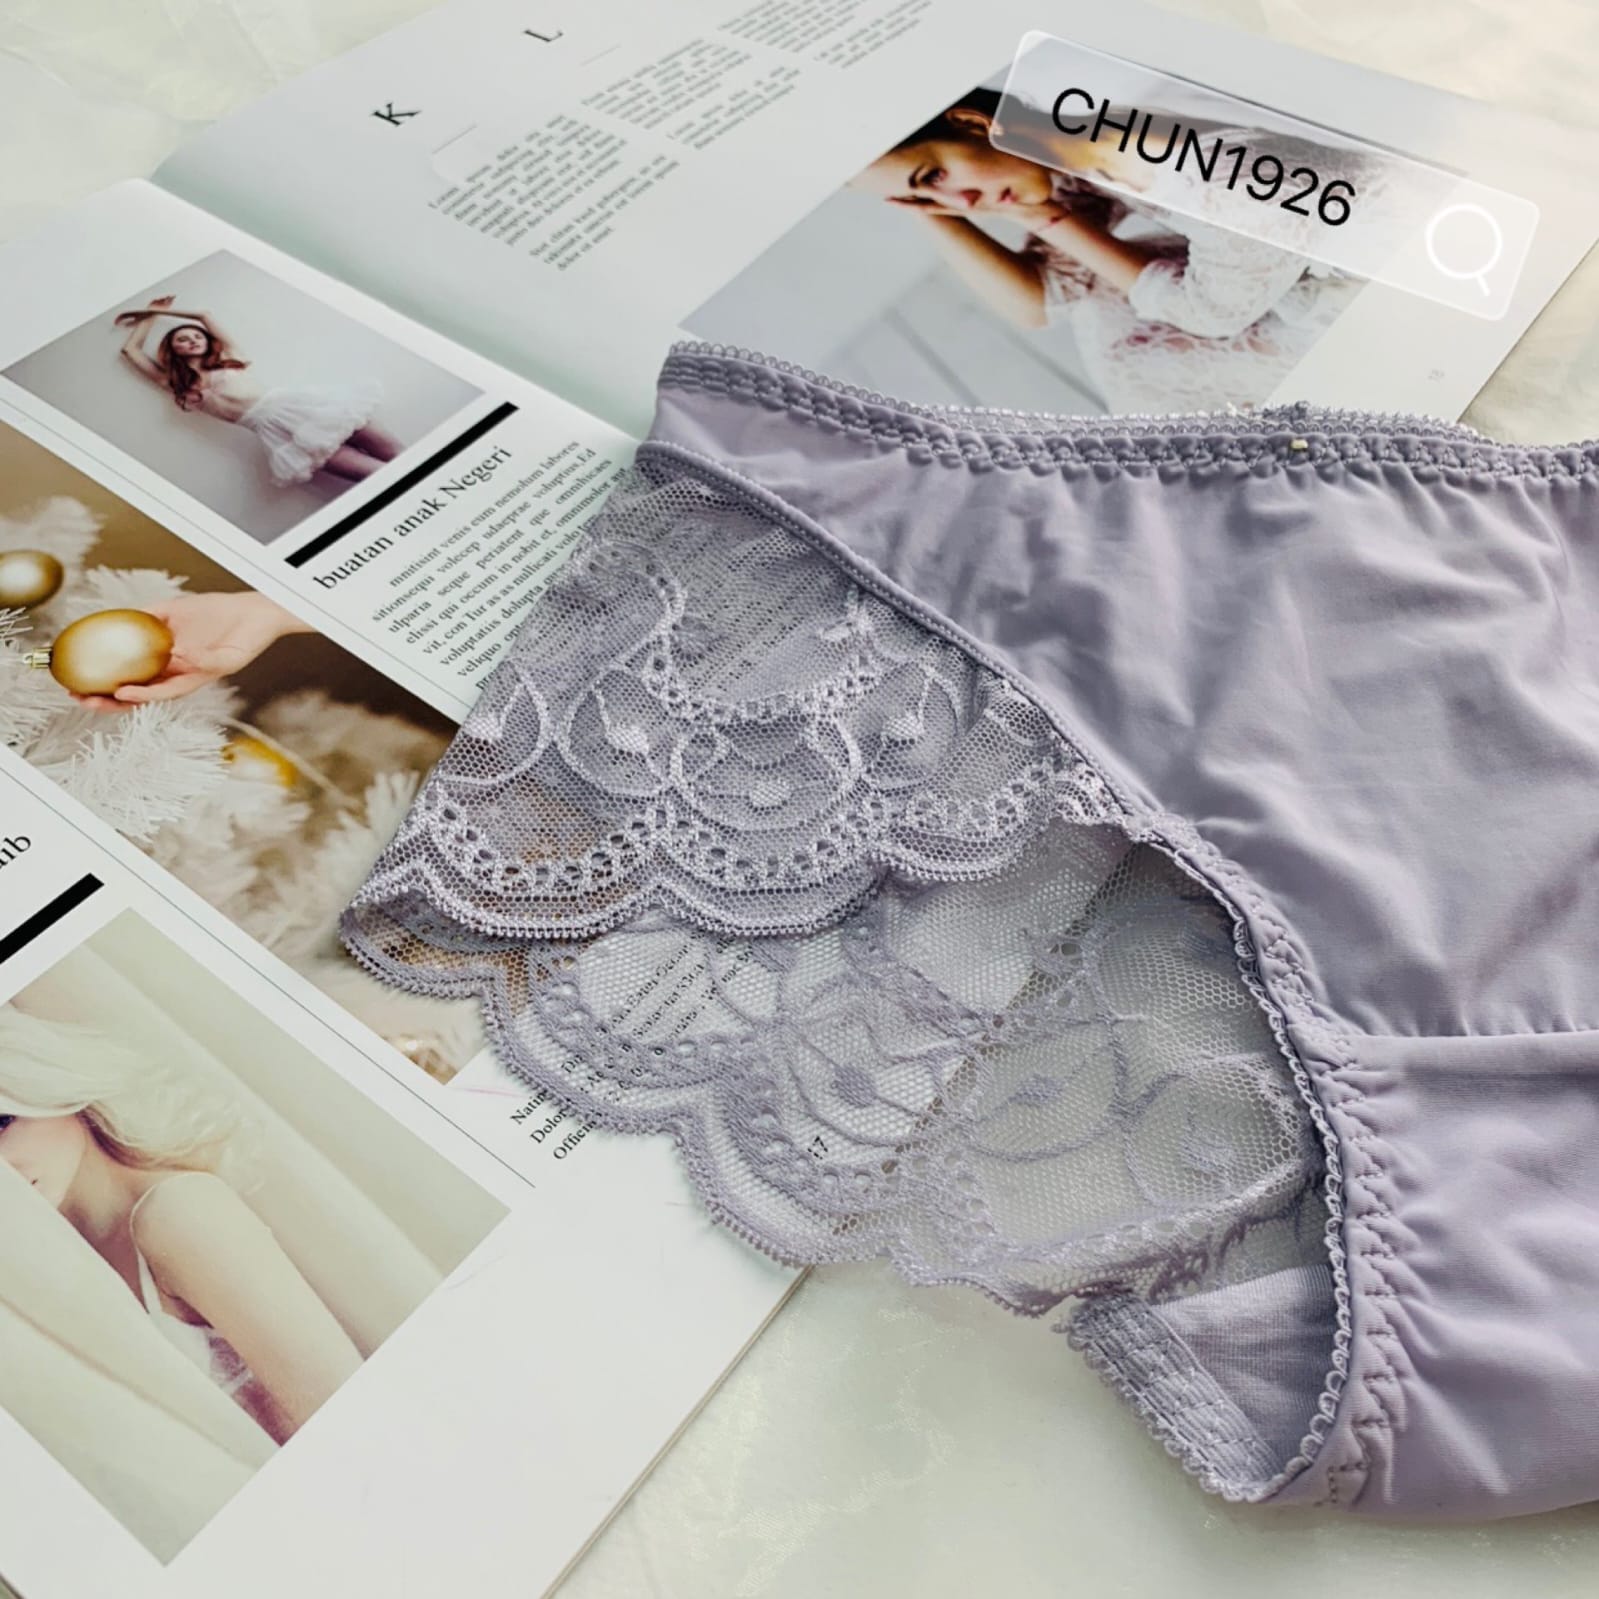 Nylon Seamless Bikini Panties Multicolor Pack Low Waist - Temu